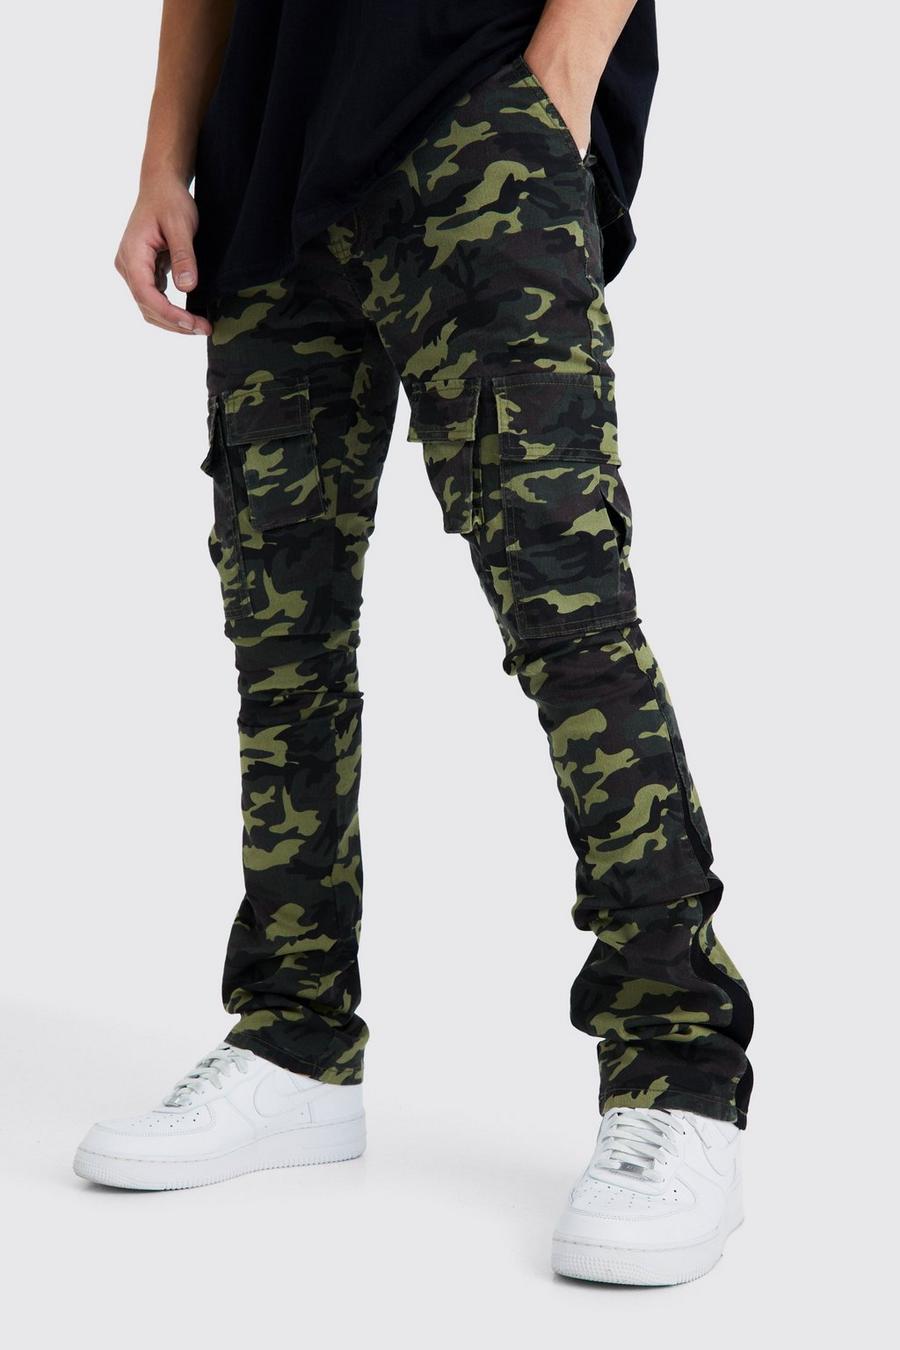 Pantaloni Cargo Skinny Fit in fantasia militare con inserti e pieghe sul fondo, Khaki